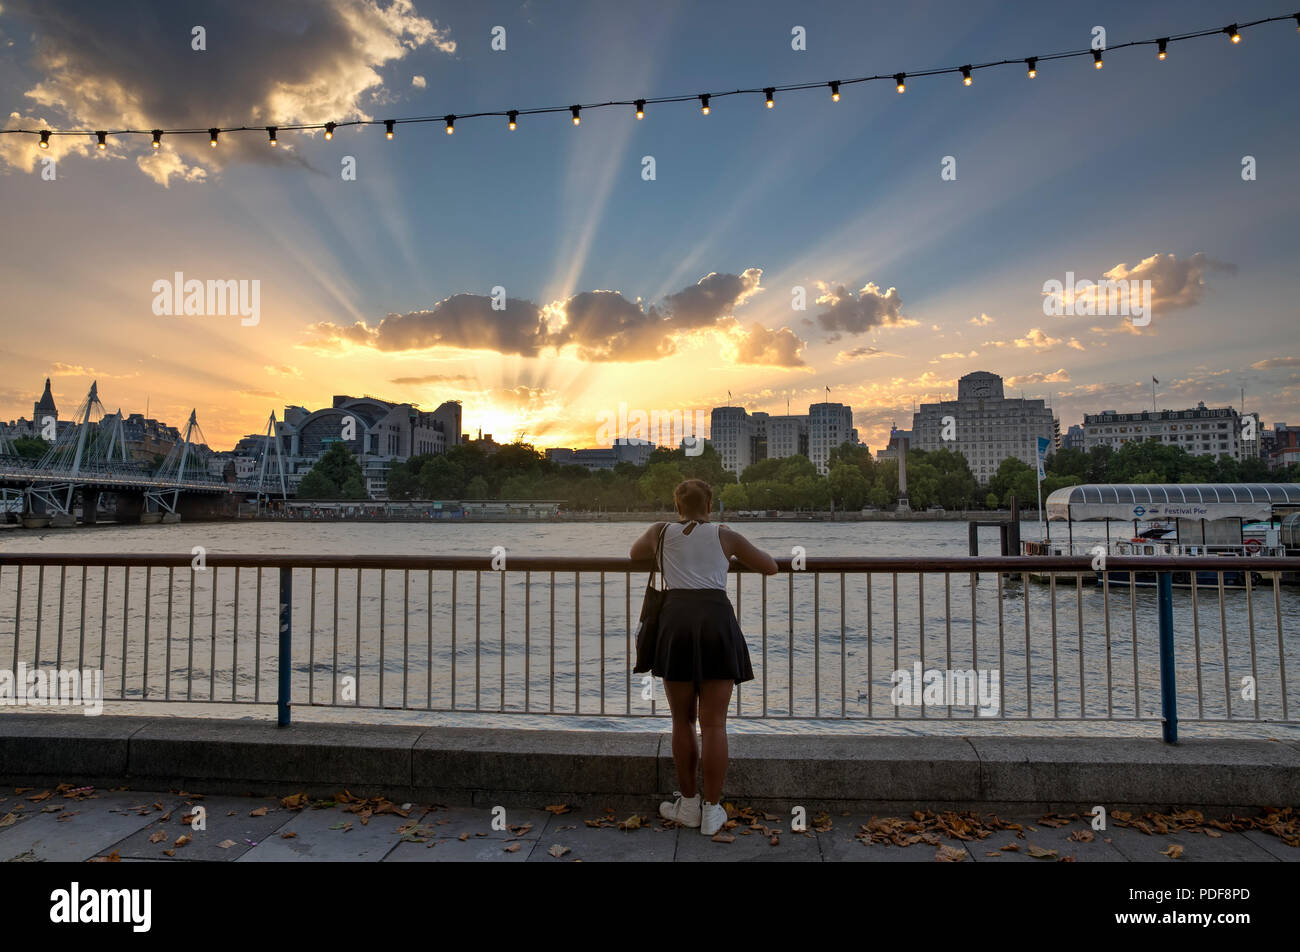 Londres, Reino Unido - Agosto 6, 2018 : Una mujer joven en la orilla sur del río Támesis, examina los rayos crepusculares mientras el sol se pone detrás de Charing Cross Foto de stock